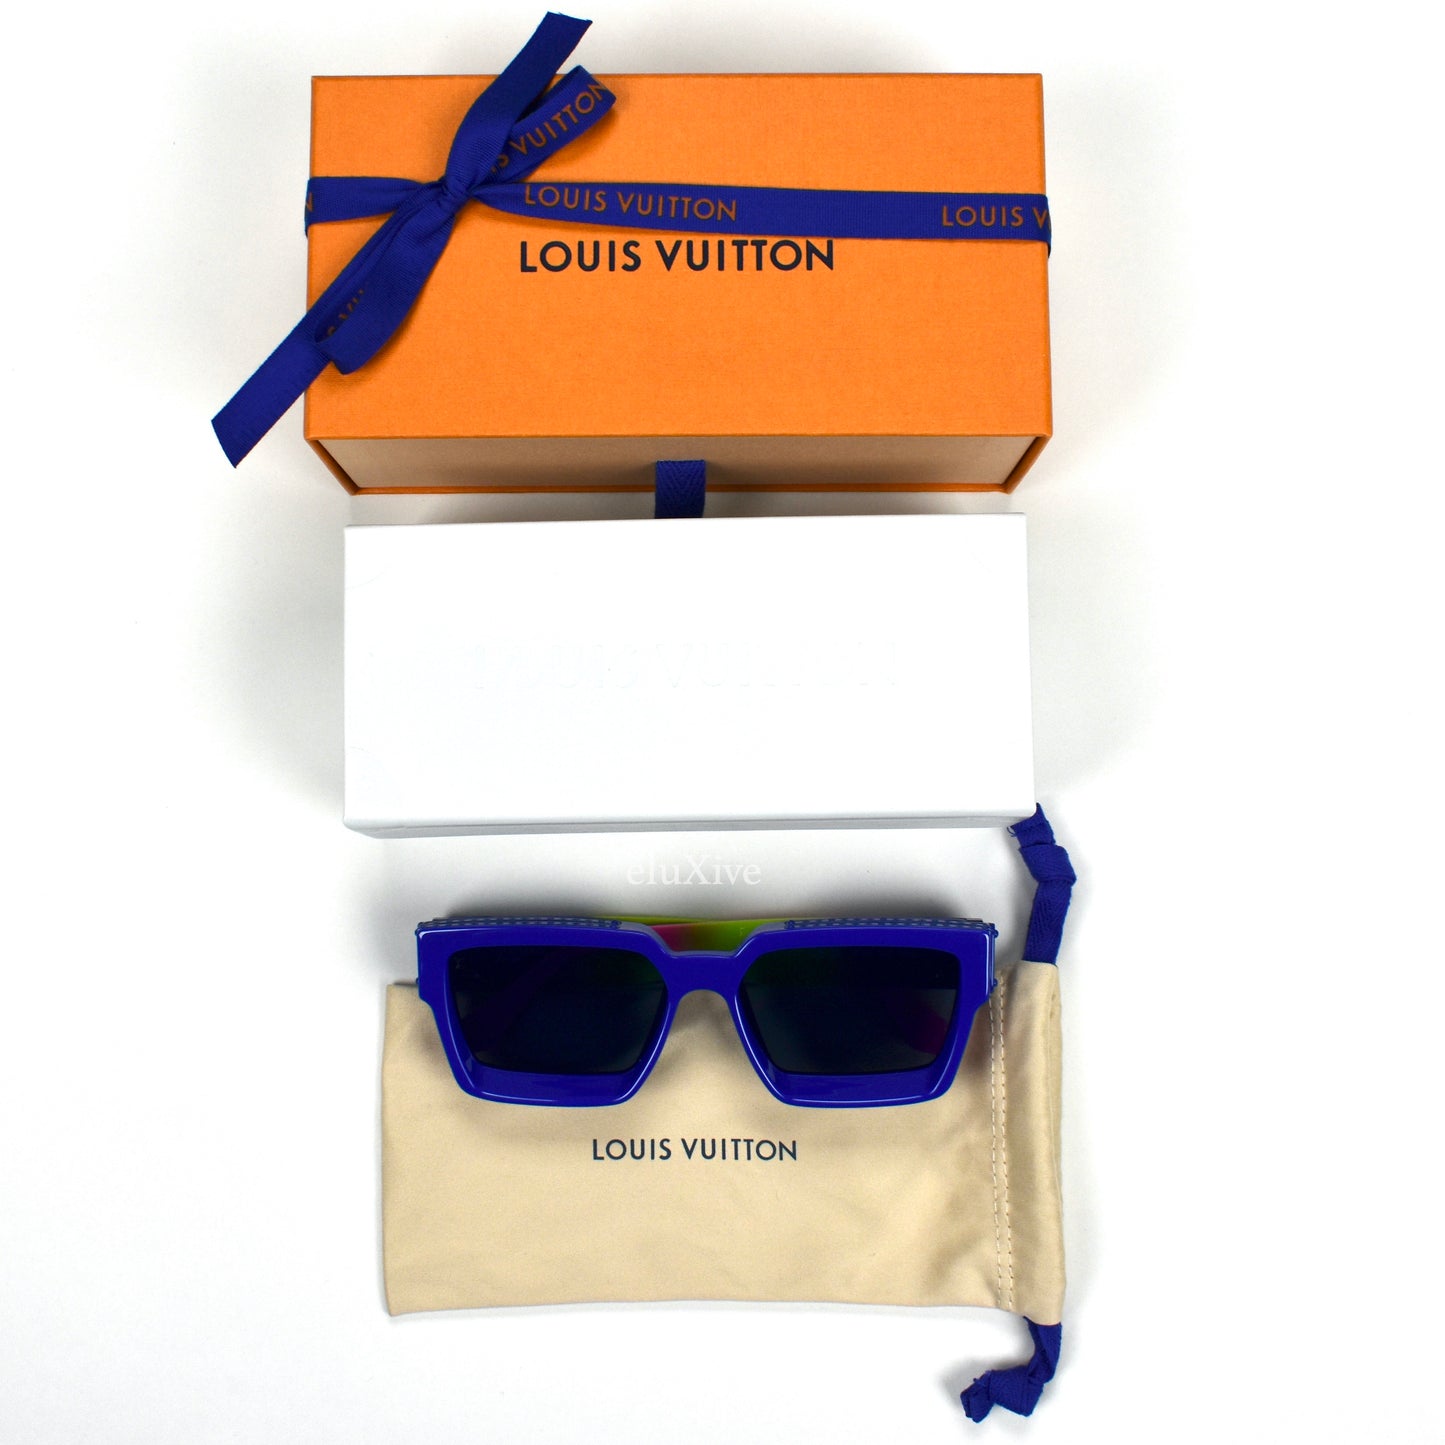 Louis Vuitton Ash Sunglasses & 1.1 Millionaires Sunglasses 